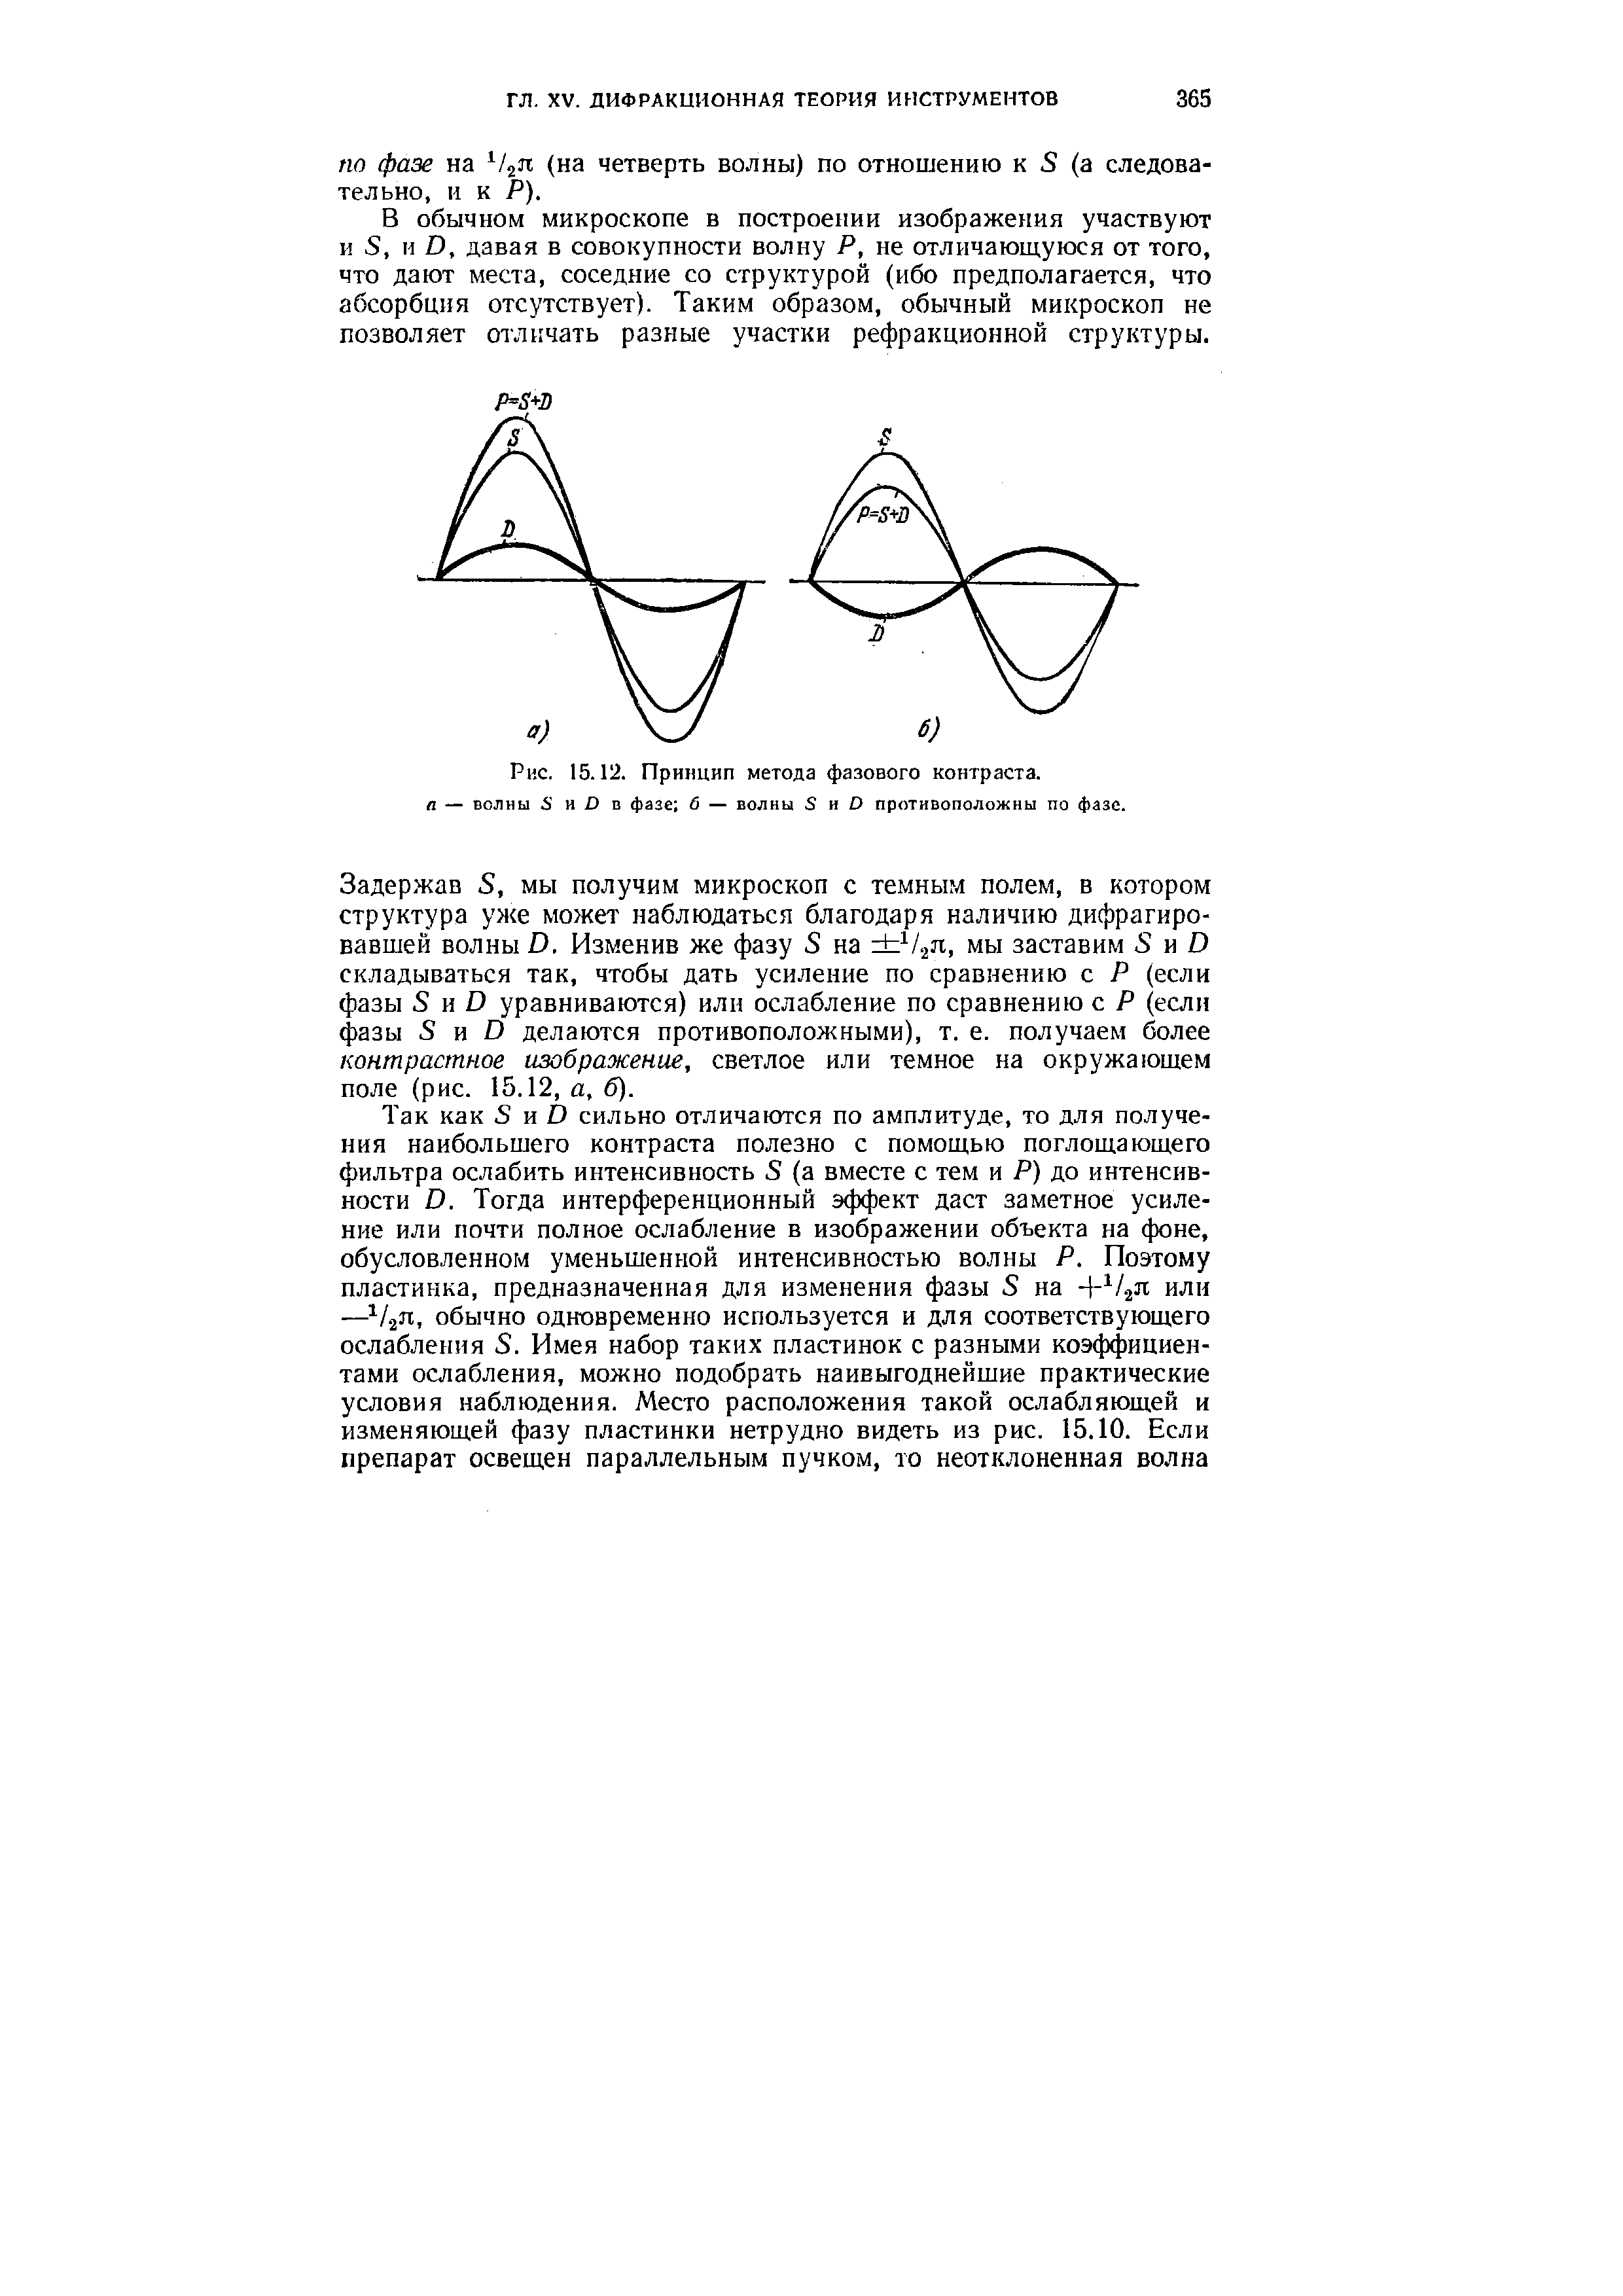 Рис. 15.12. Принцип метода фазового контраста. п — волны и ) в фазе б — волны 8 и О противоположны по фазе.
